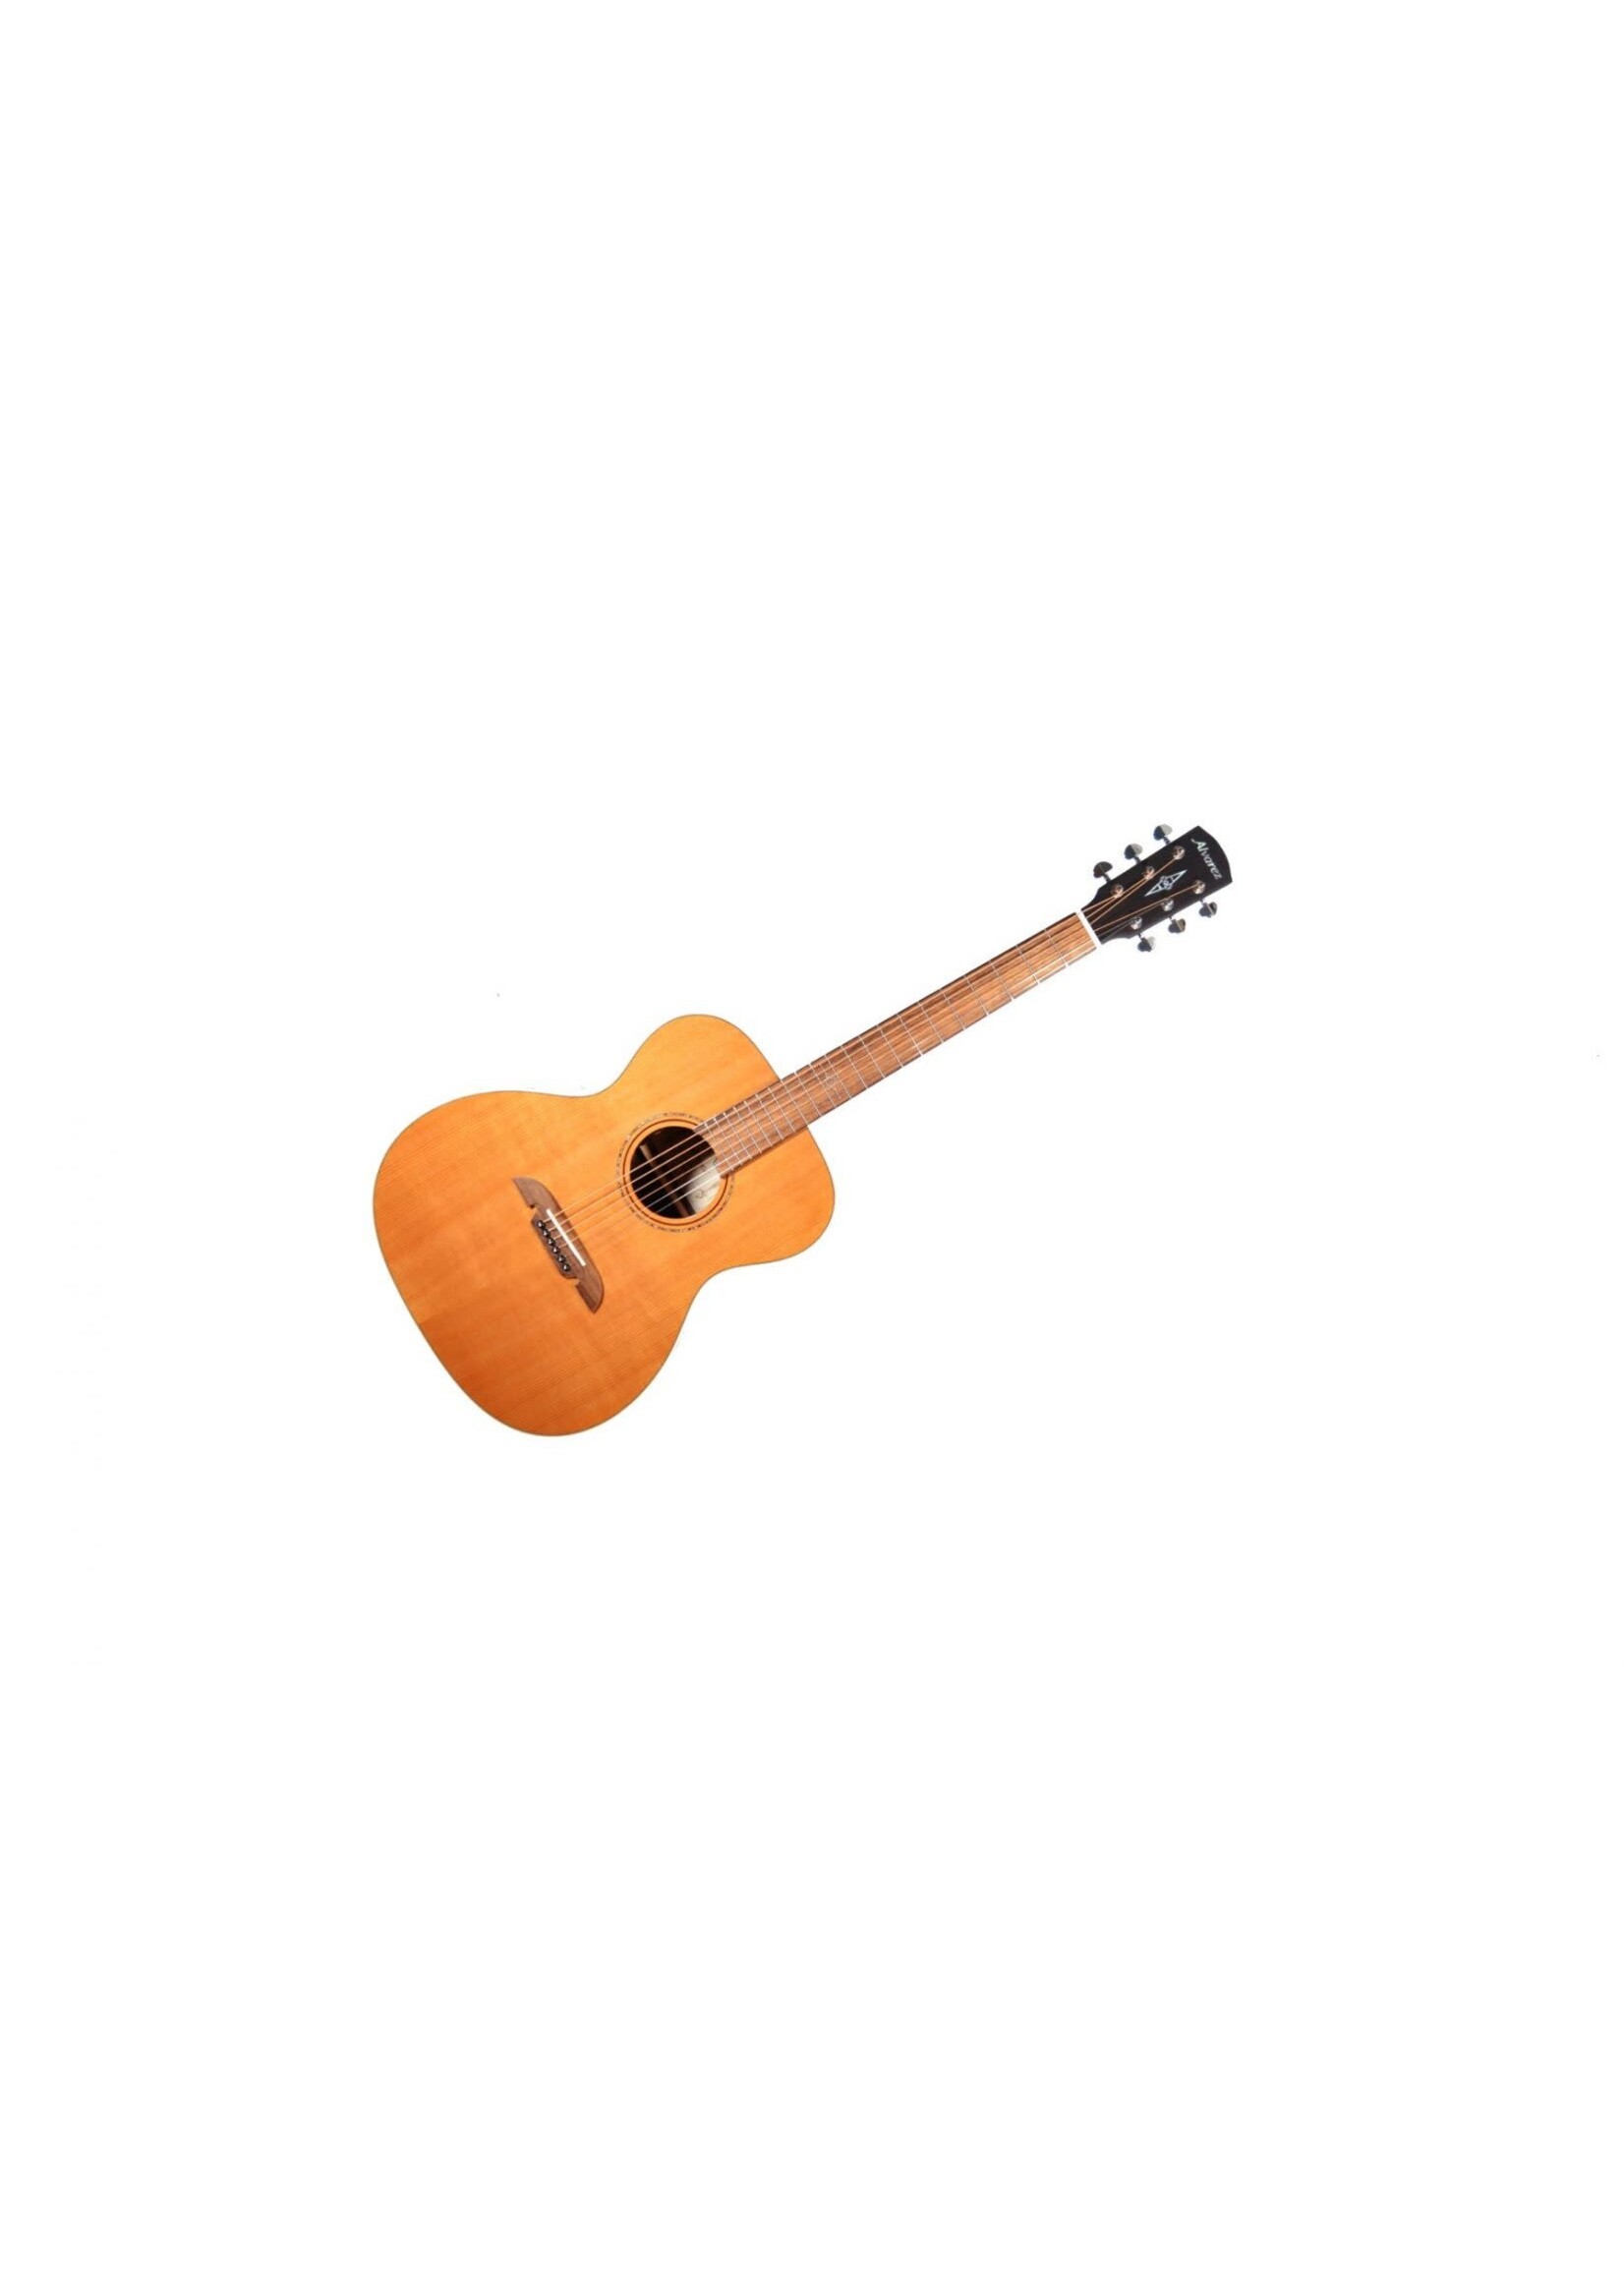 Alvarez Alvarez AF75E-AGP Solid Red Cedar Top OM Size Acoustic/Electric Guitar w/ Gig Bag